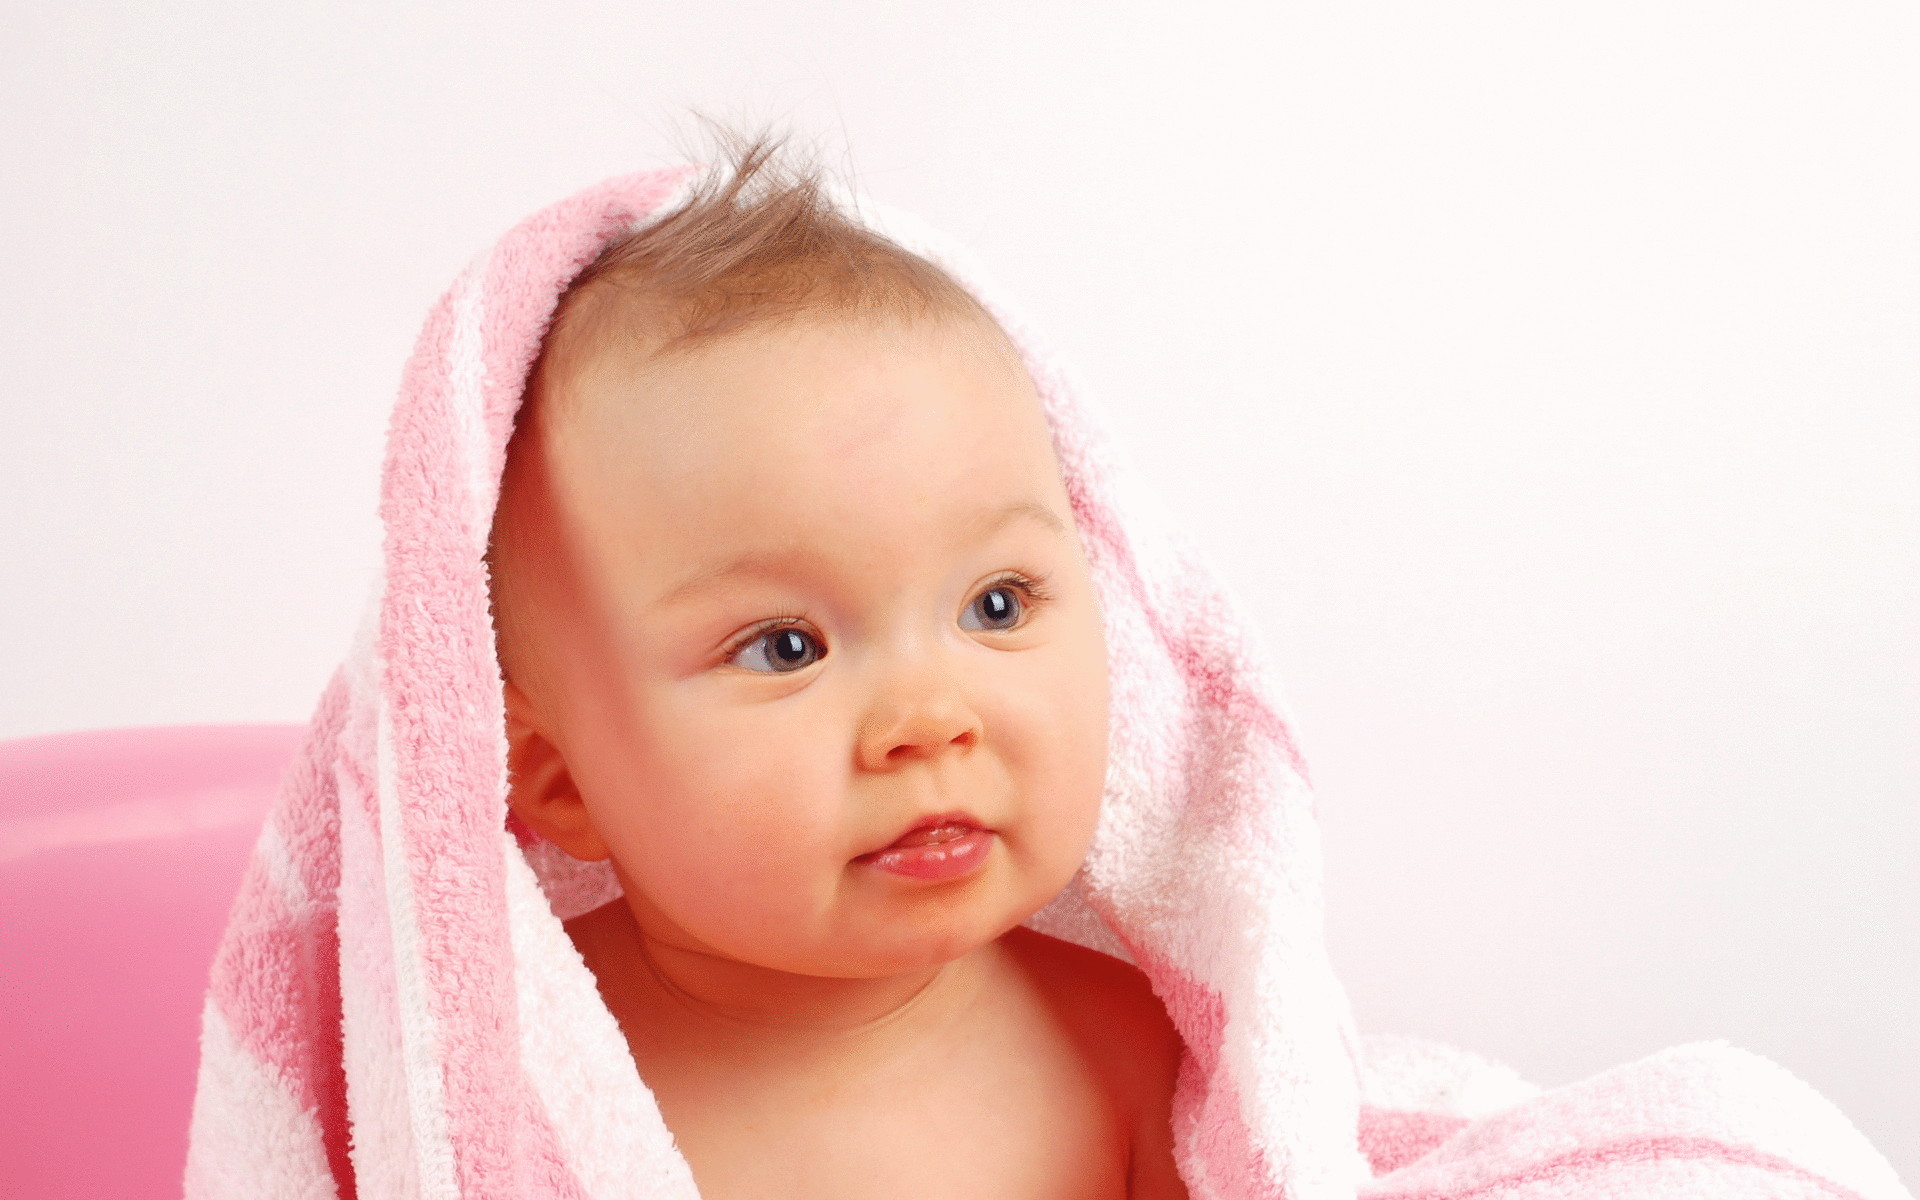 Правильно выбирайте шампунь для детей- он может сушить кожу головы